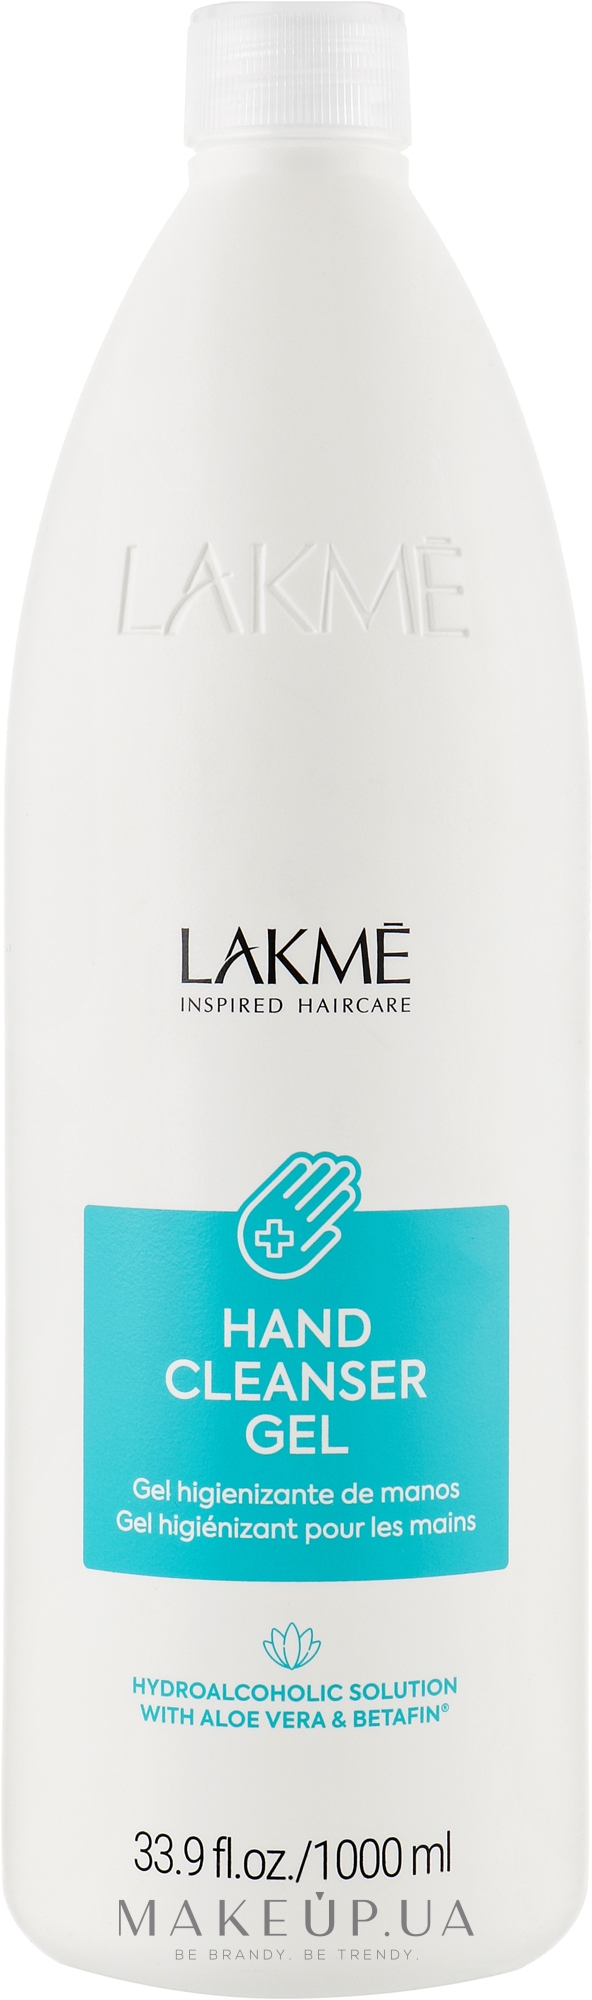 Дезінфікувальний гель для рук - Lakme Hand Sanitizer — фото 1000ml